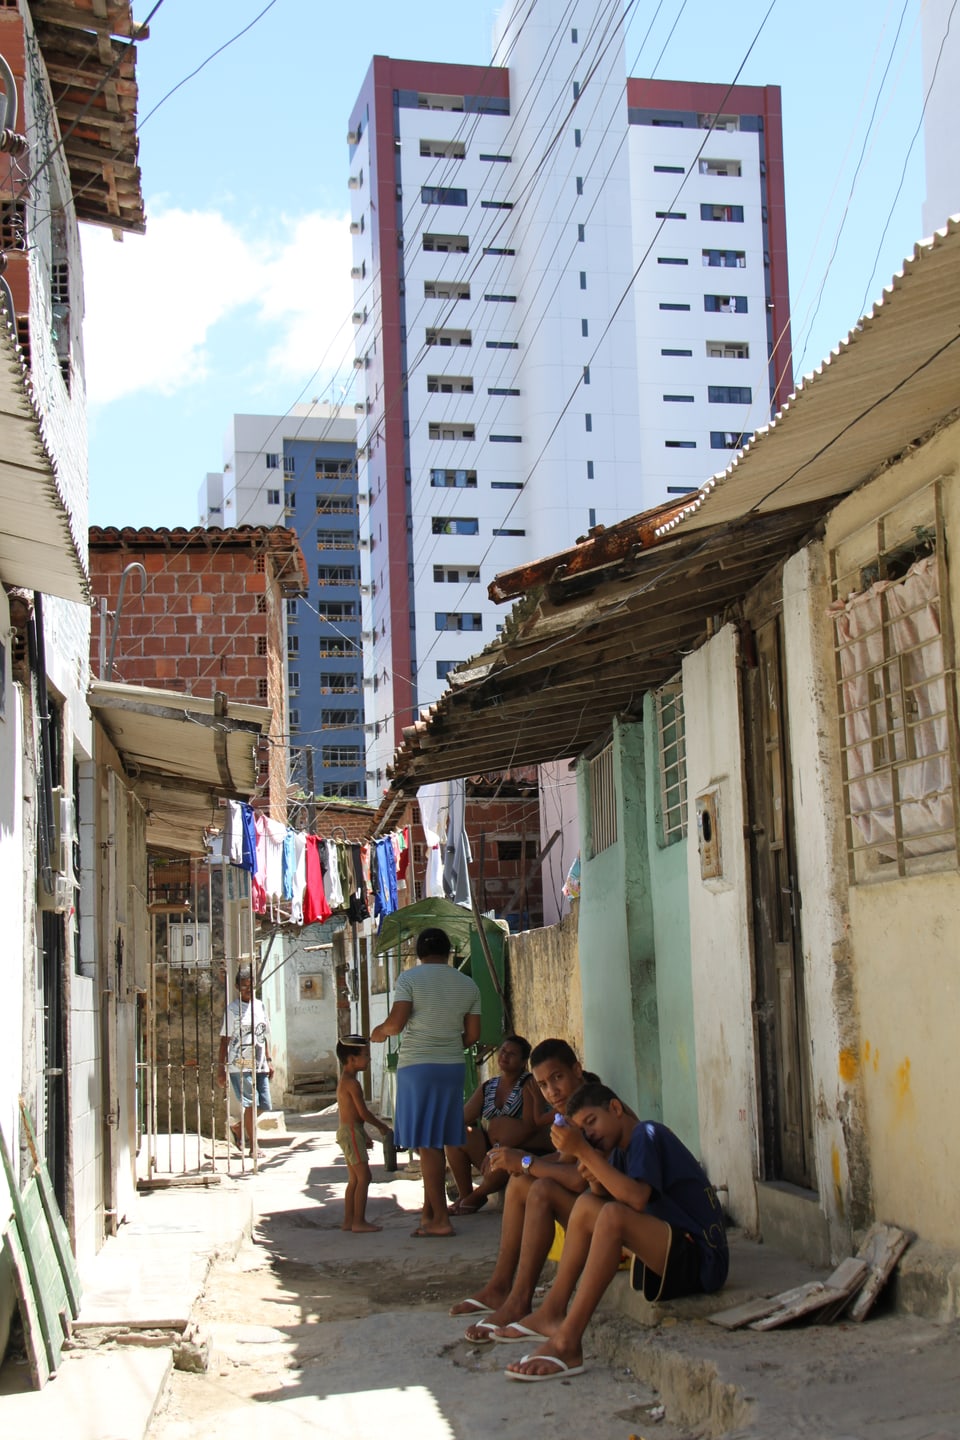 Recife, Brasilien